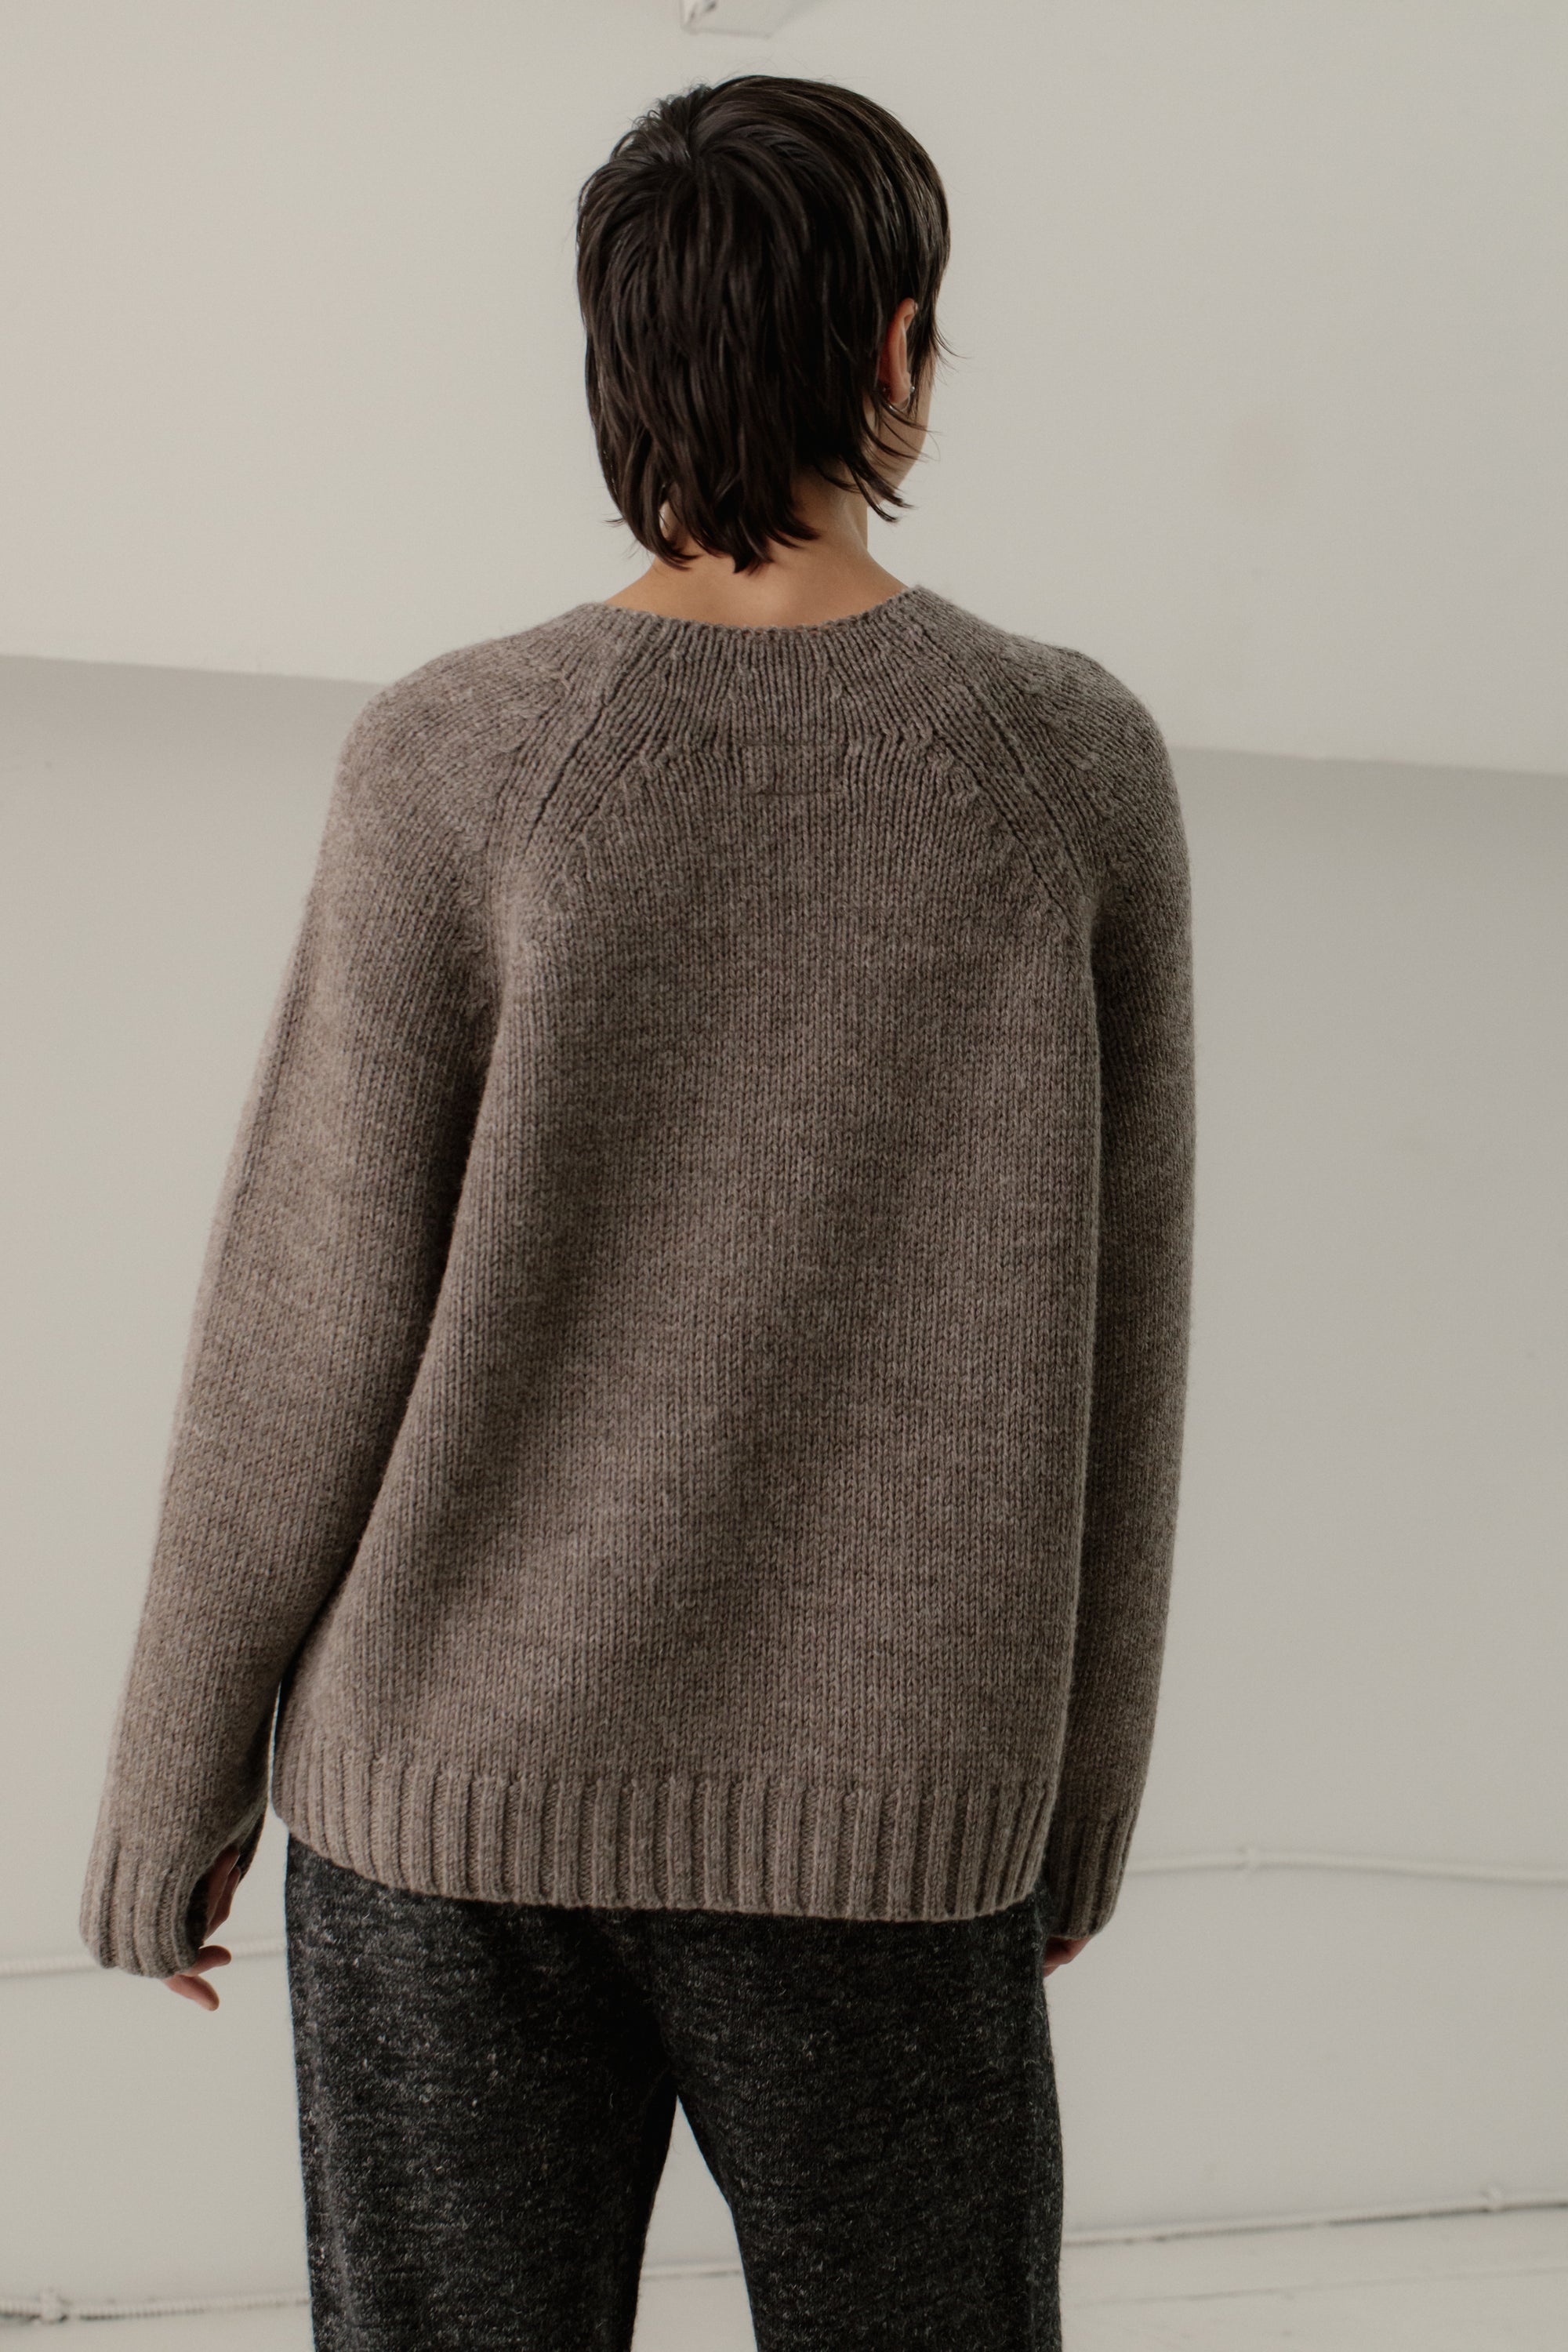 Bare Knitwear Channel Sweater / Root